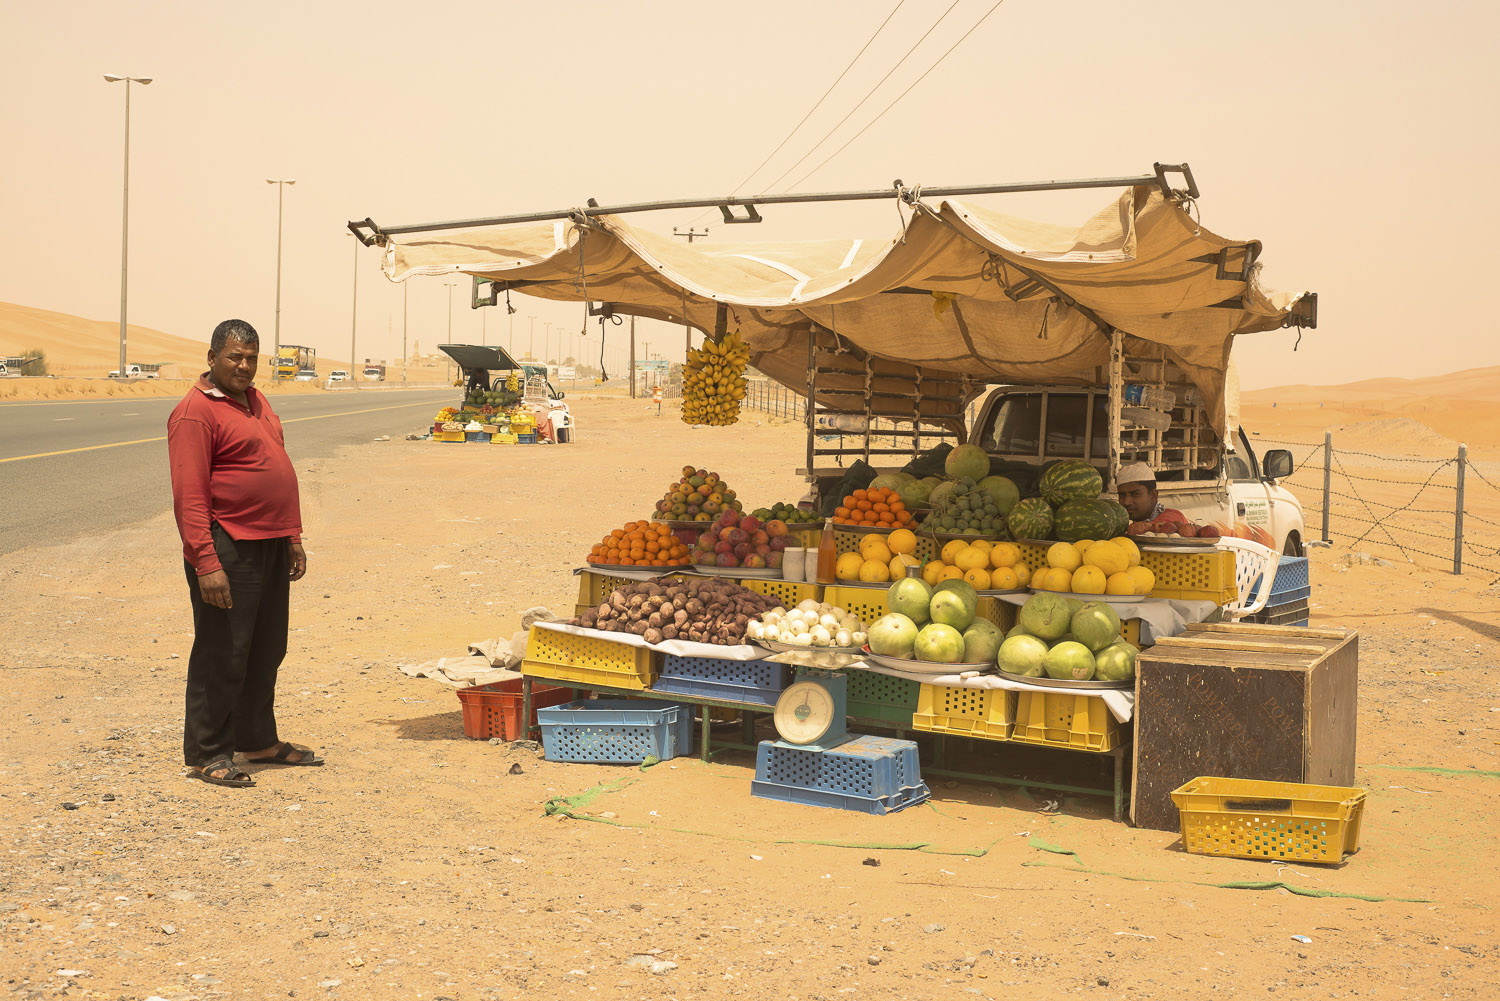 roadside-stalls-Dubai-UAE-fruit-vegetables-Al-Ain-jo-kearney-photography-video-cheltenham.jpg